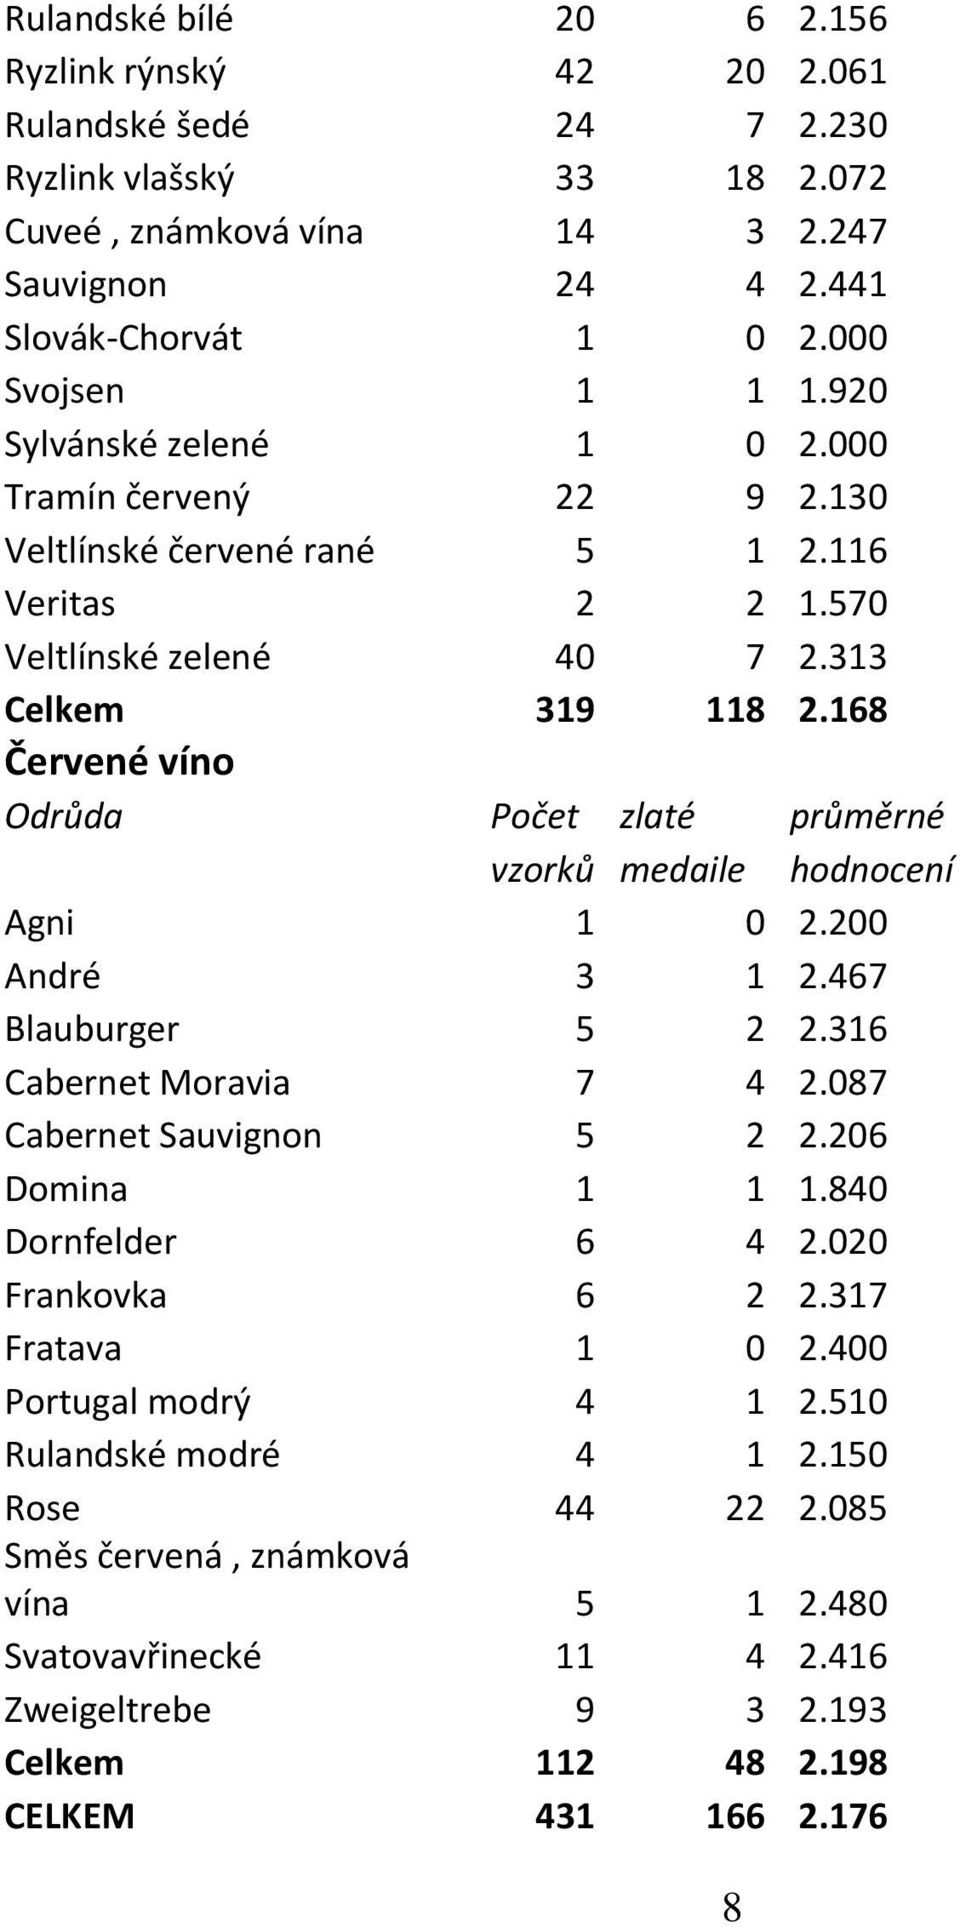 168 Červené víno Odrůda Počet zlaté průměrné vzorků medaile hodnocení Agni 1 0 2.200 André 3 1 2.467 Blauburger 5 2 2.316 Cabernet Moravia 7 4 2.087 Cabernet Sauvignon 5 2 2.206 Domina 1 1 1.